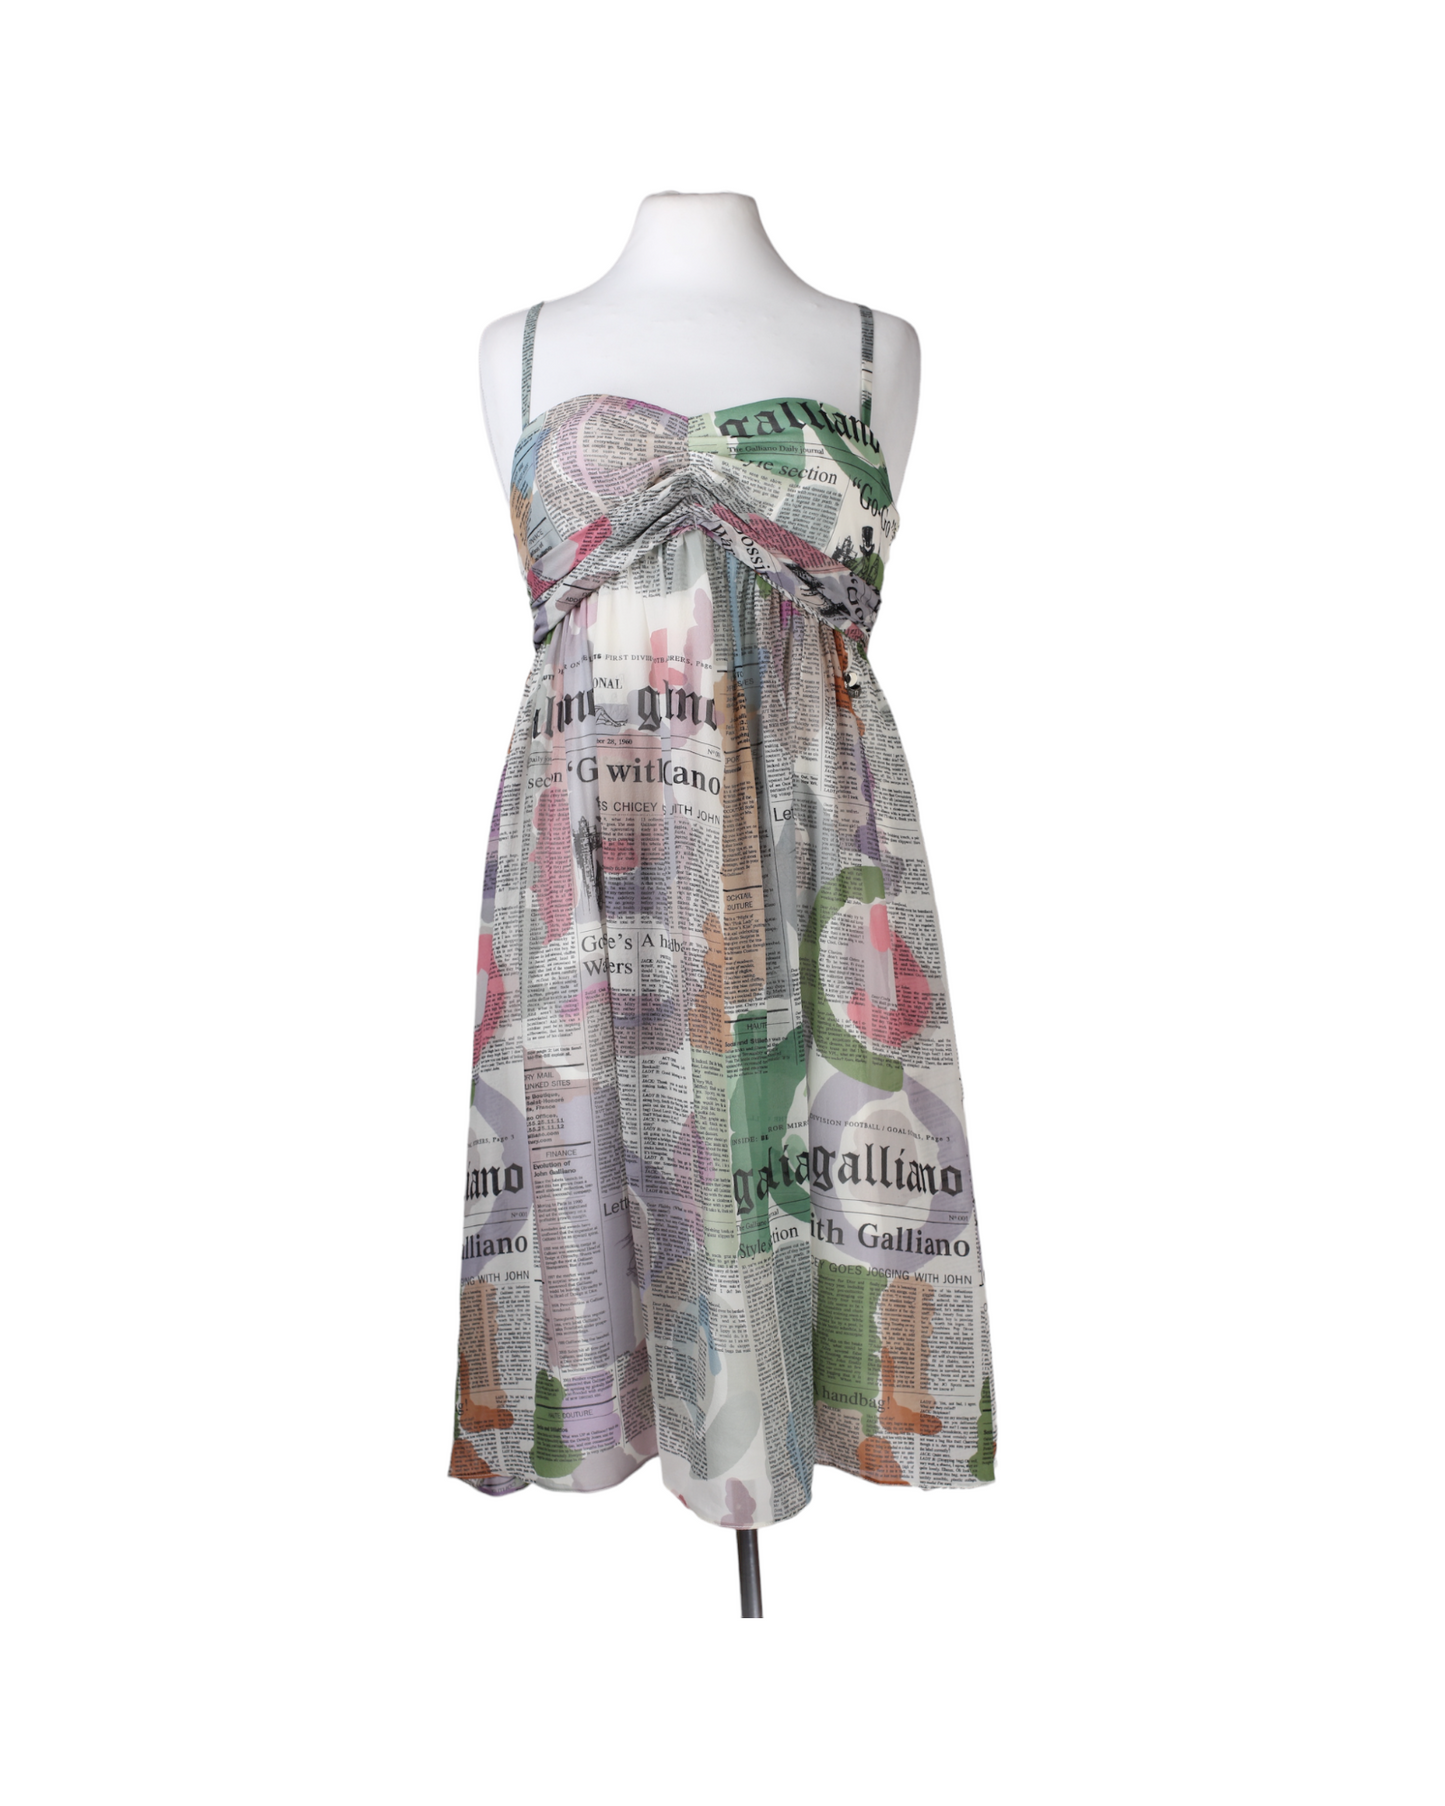 فستان صيفي بمطبوعات ملونة من متجر غاليانو